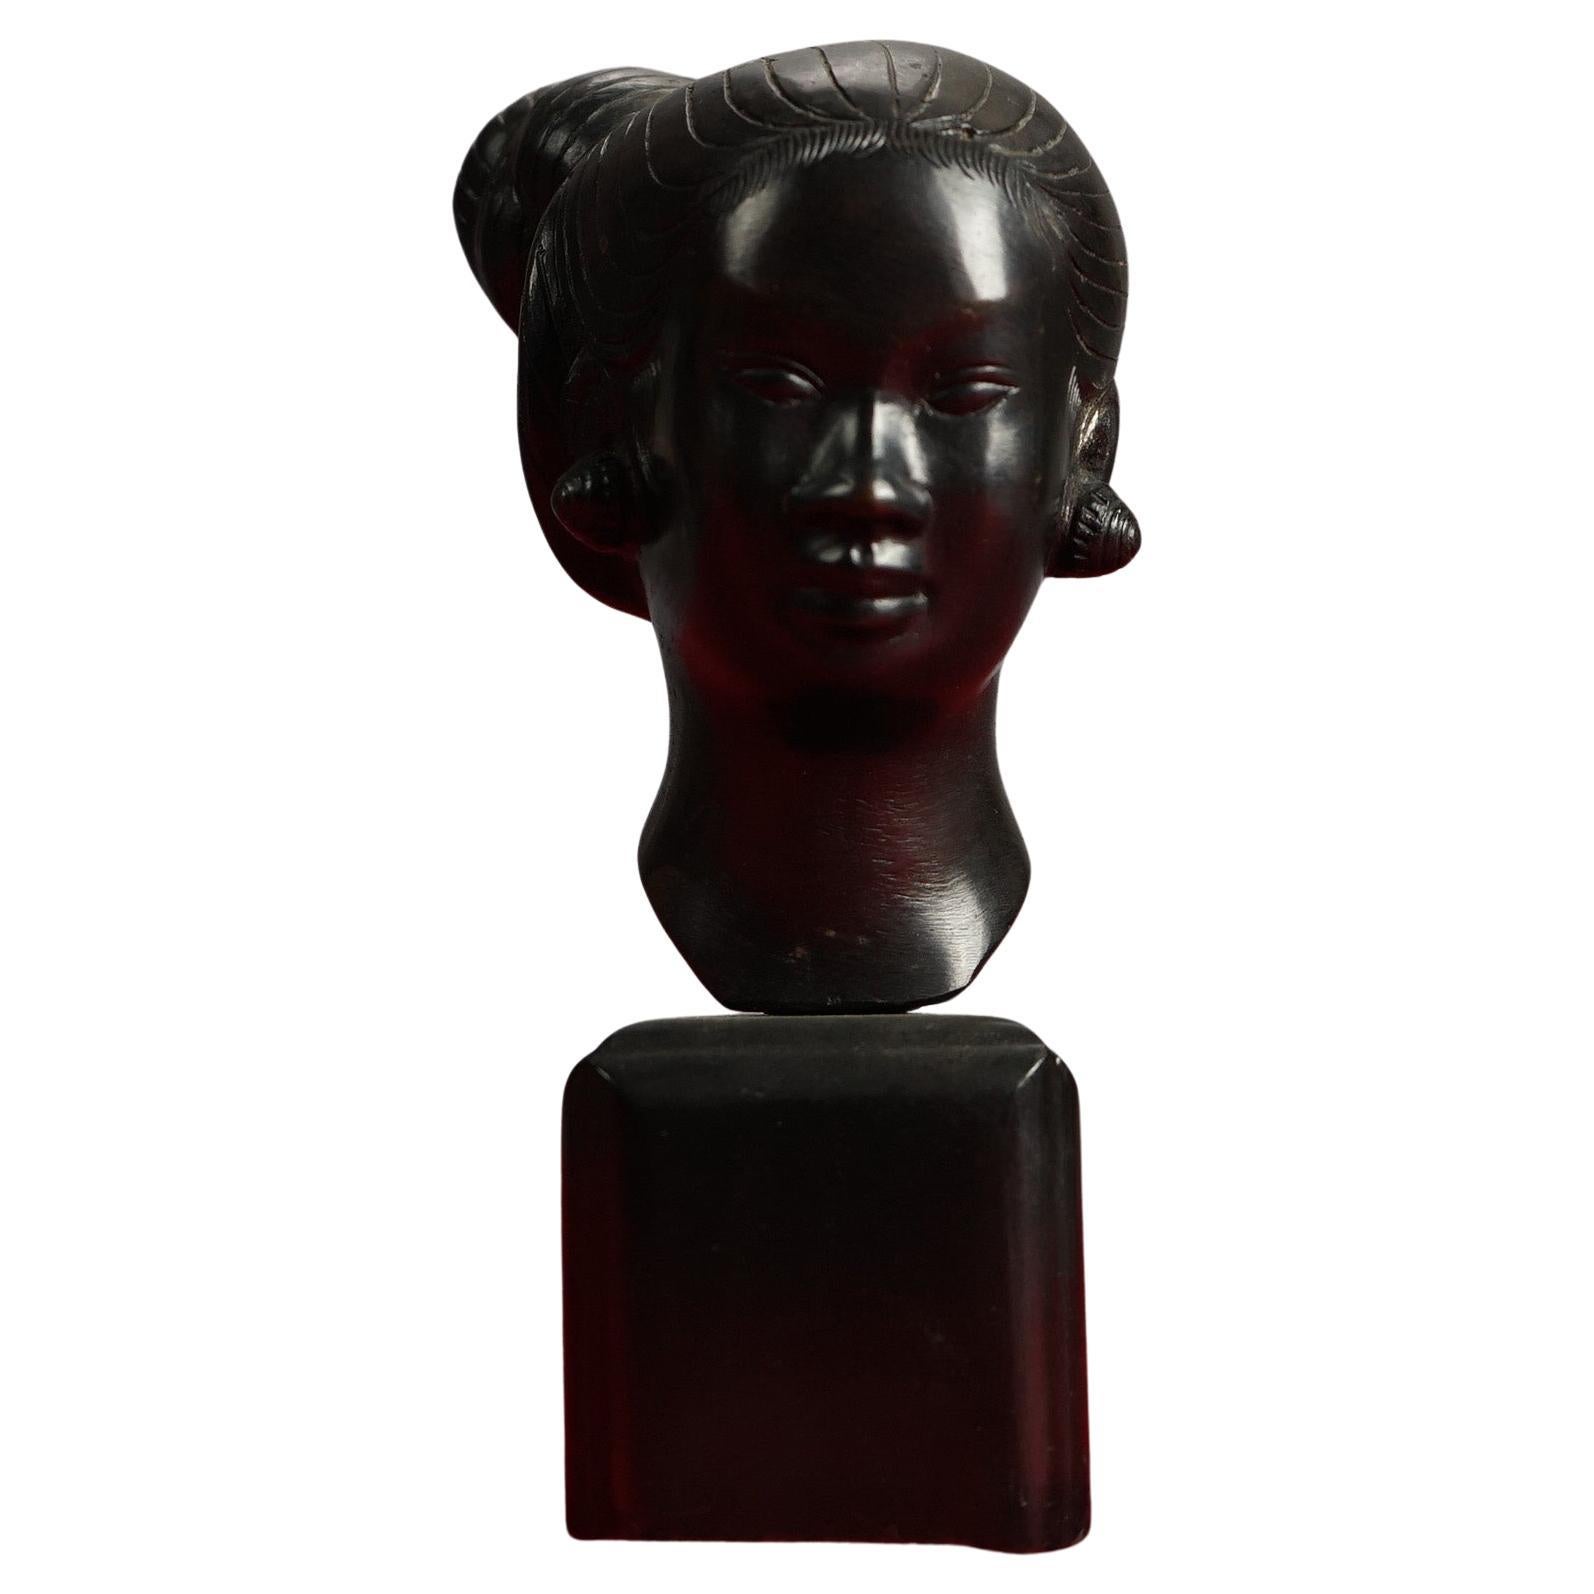 Japanese Cast Bronze Portrait Bust Sculpture of a Young WomanC1920

Measures - 7